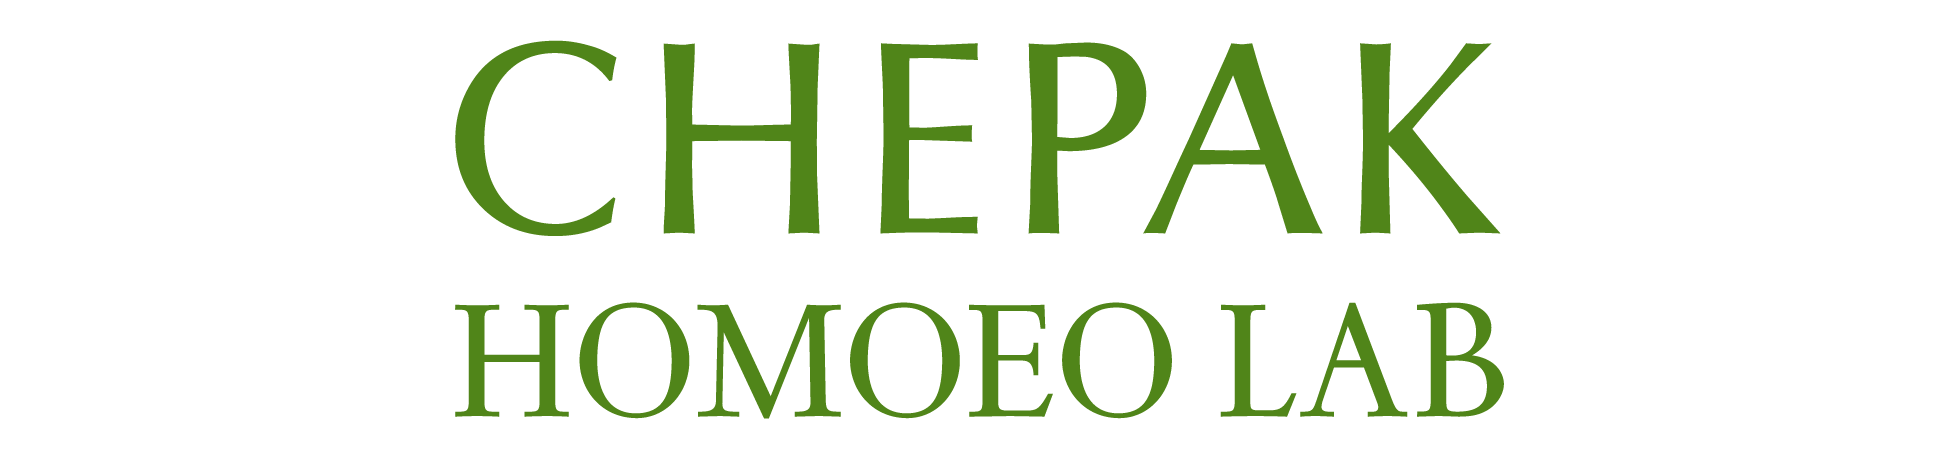 CHEPAK logo